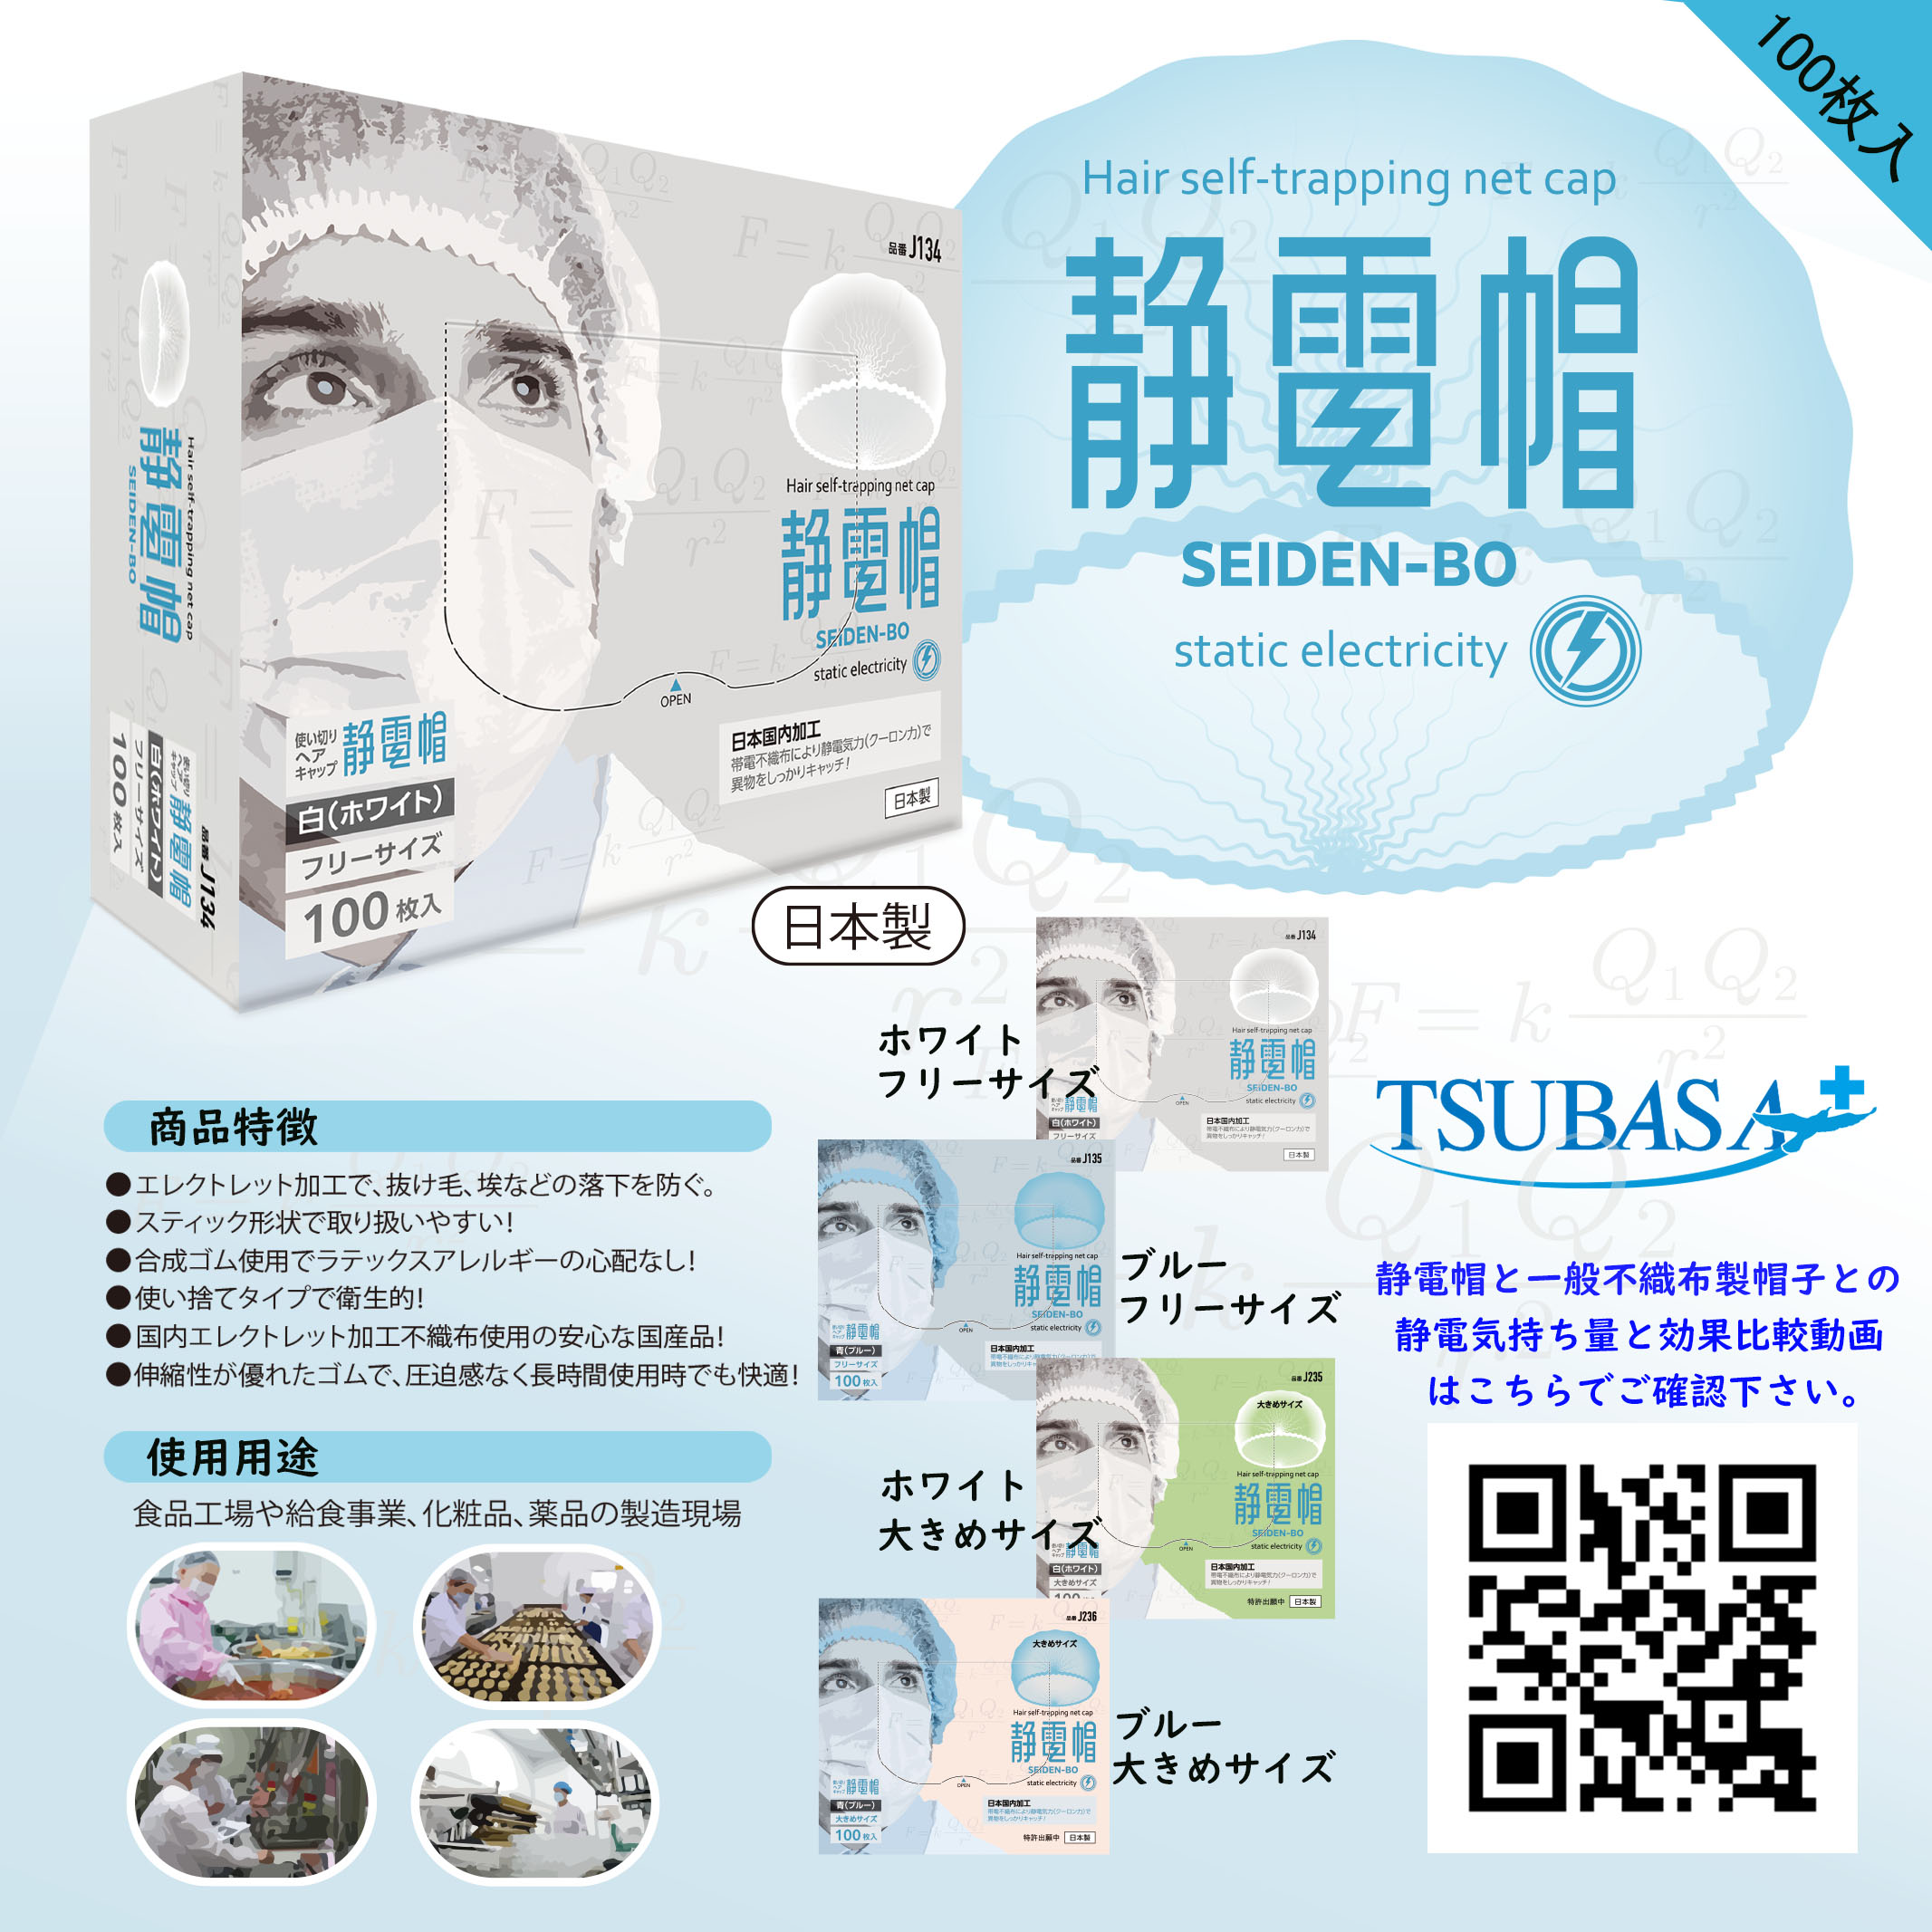 【日本製】TSUBASA 静電帽 使い捨て 白 ギャザーキャップ 使い切り 不織布 100本入り フリーサイズ ホワイト